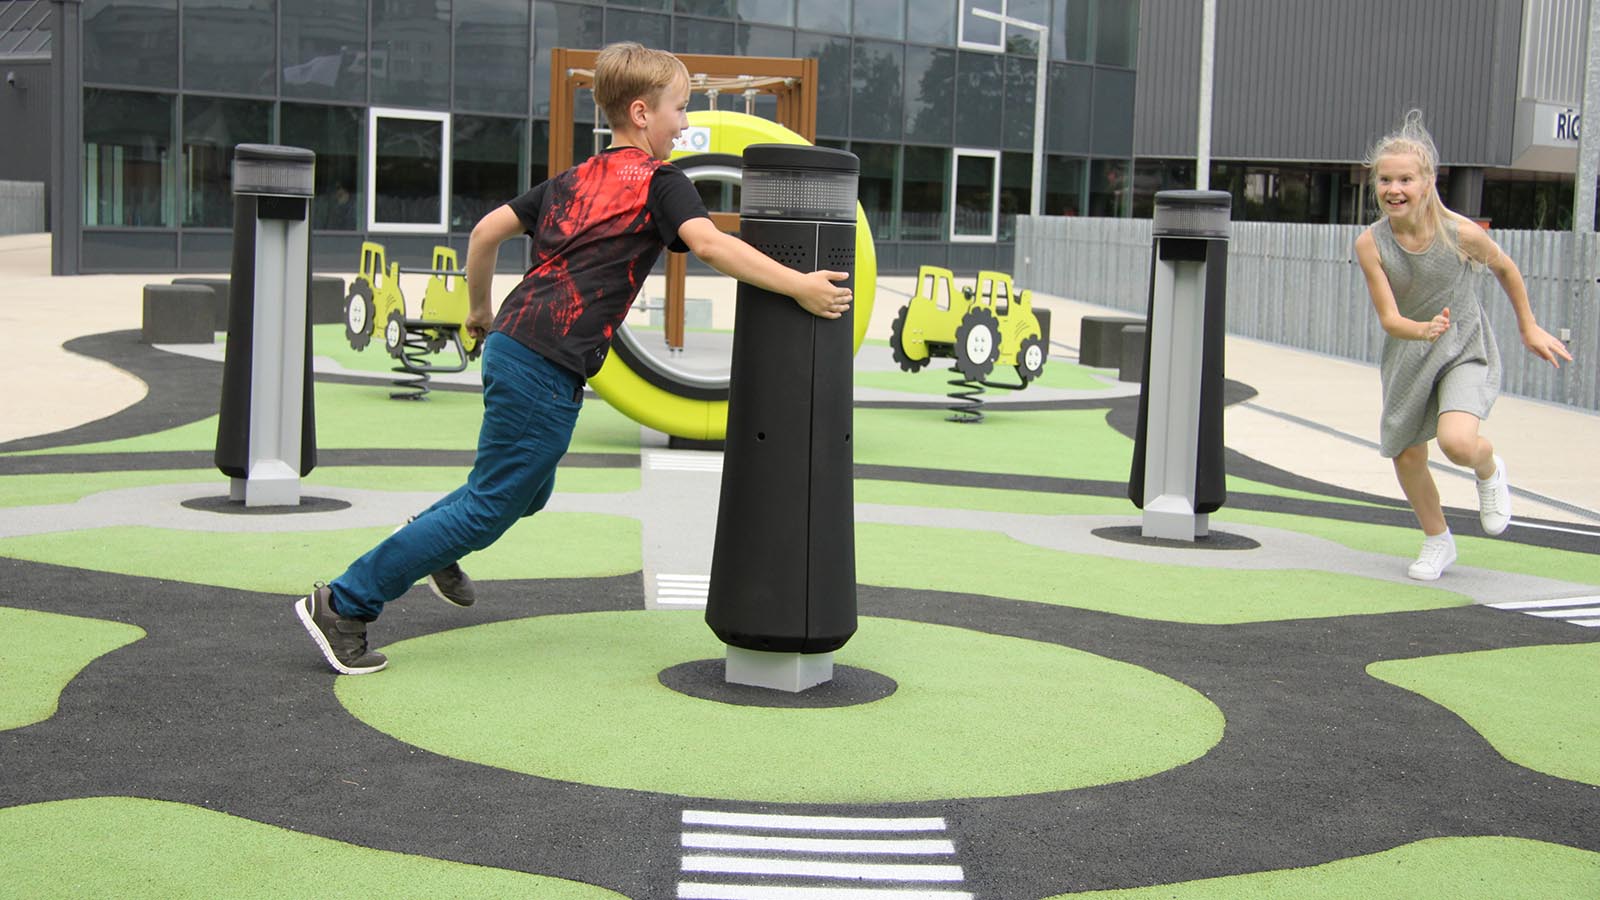 Med interaktive apparater på lekeplassen blir det uimotståelig å bevege seg